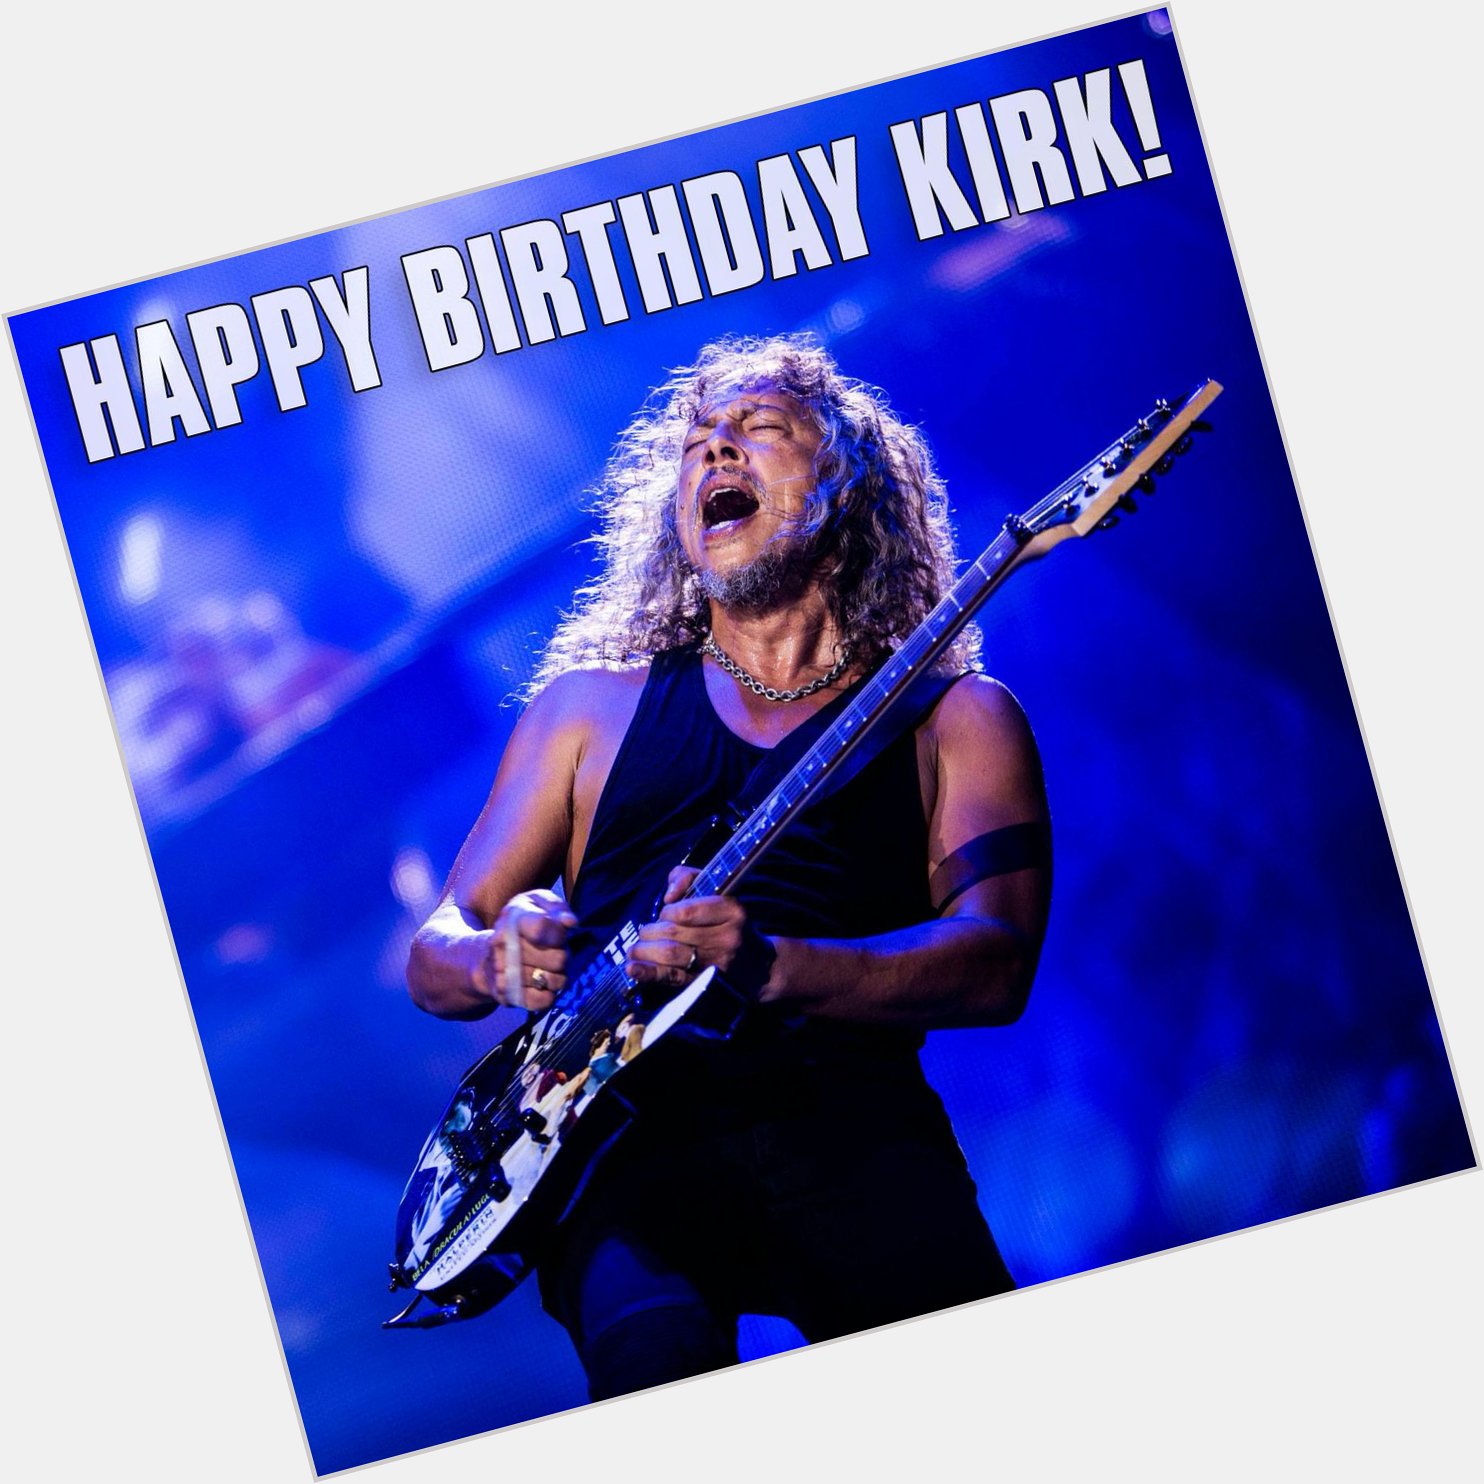     Happy Birthday Kirk Hammett. 53 years young. 